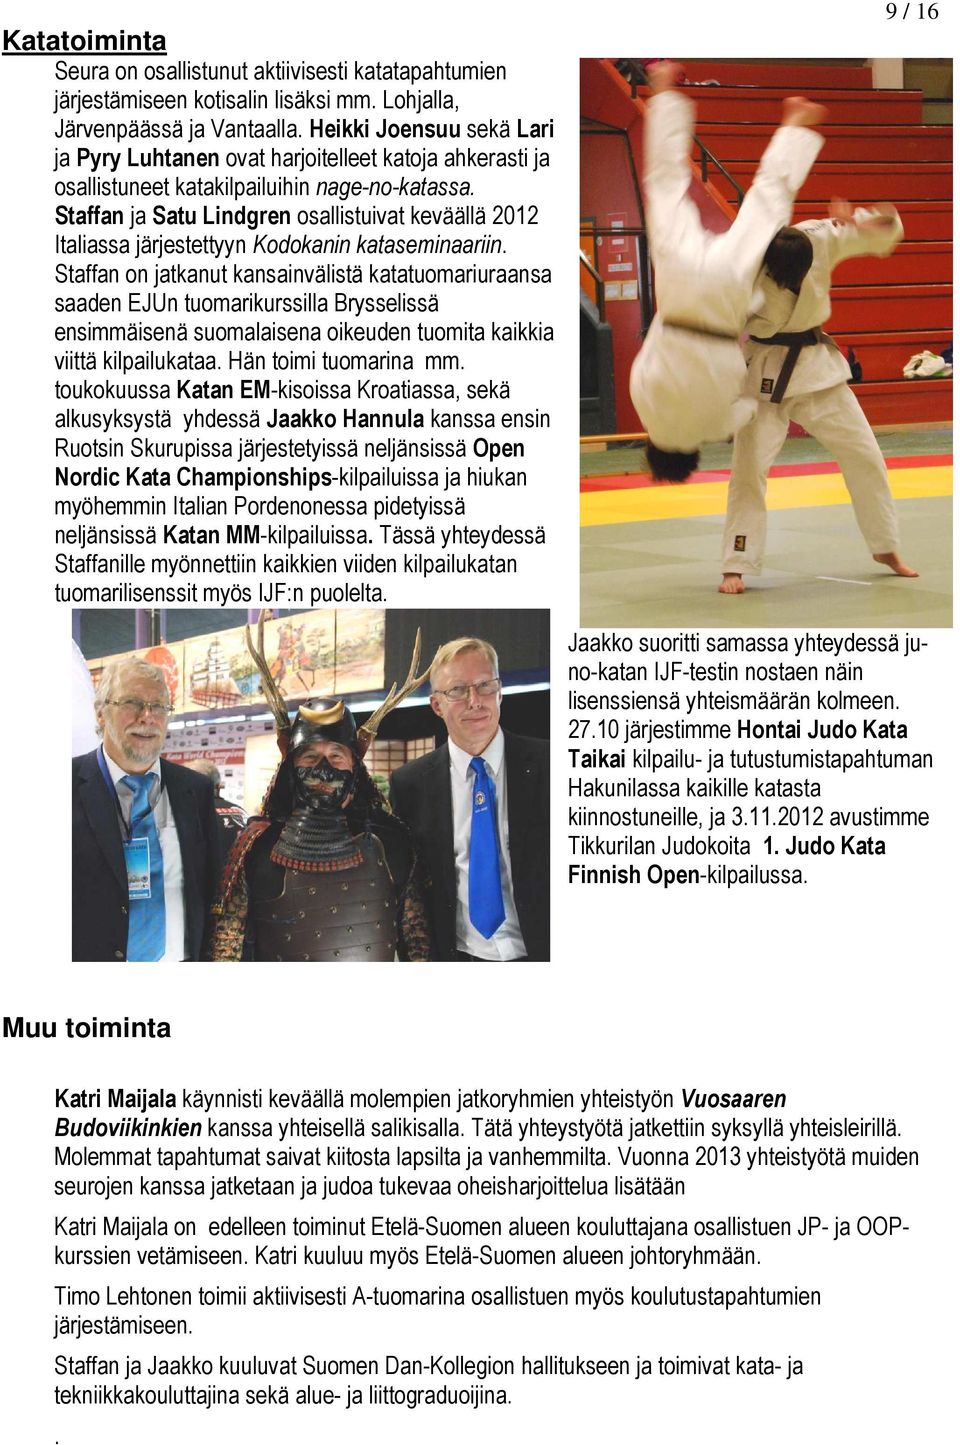 Staffan ja Satu Lindgren osallistuivat keväällä 2012 Italiassa järjestettyyn Kodokanin kataseminaariin.